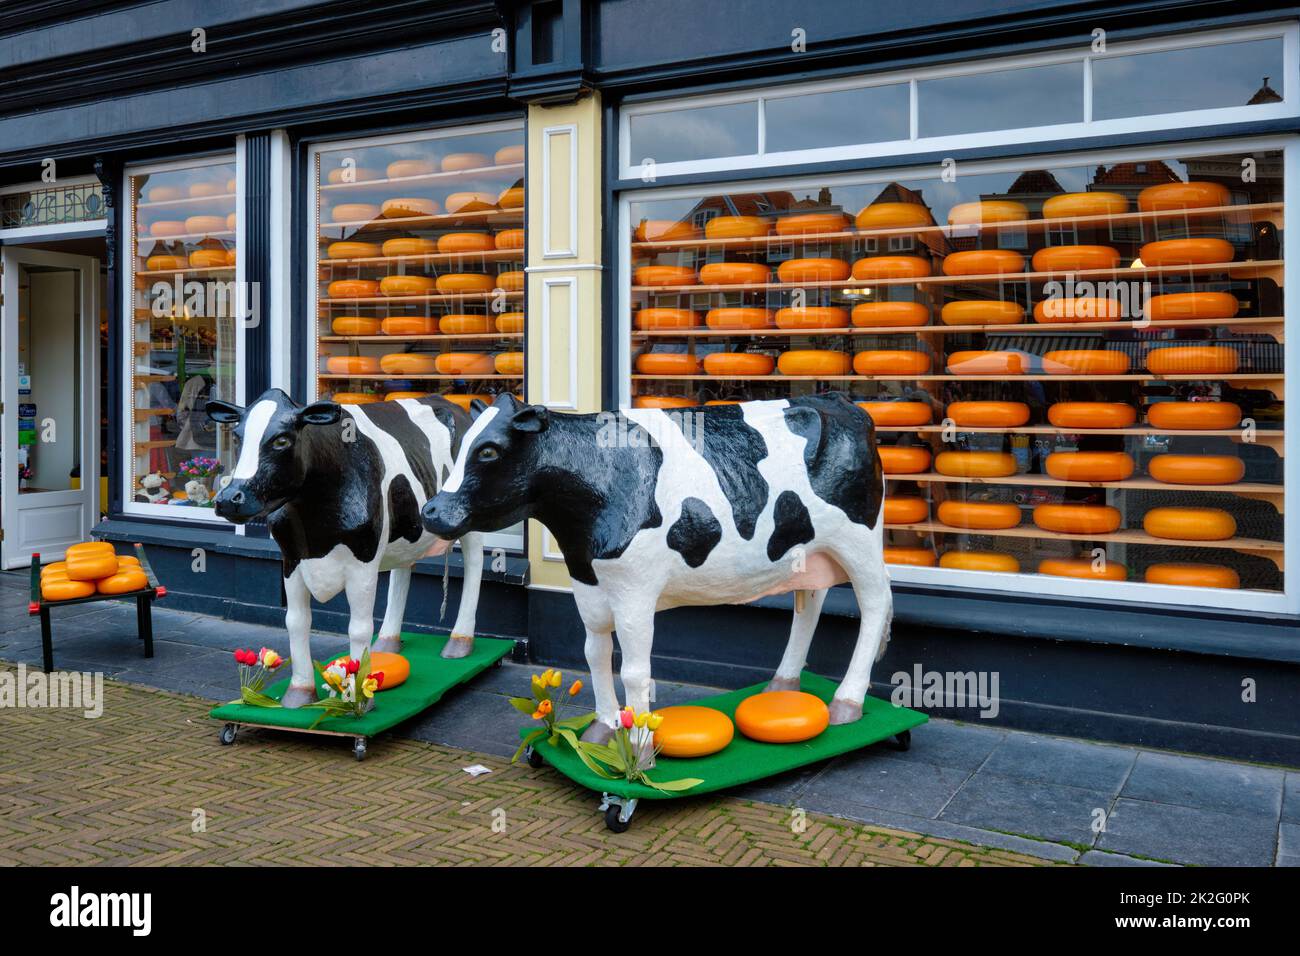 Magasin de fromages avec têtes de fromage dans la fenêtre du magasin et Statues de vache aux pays-Bas Banque D'Images